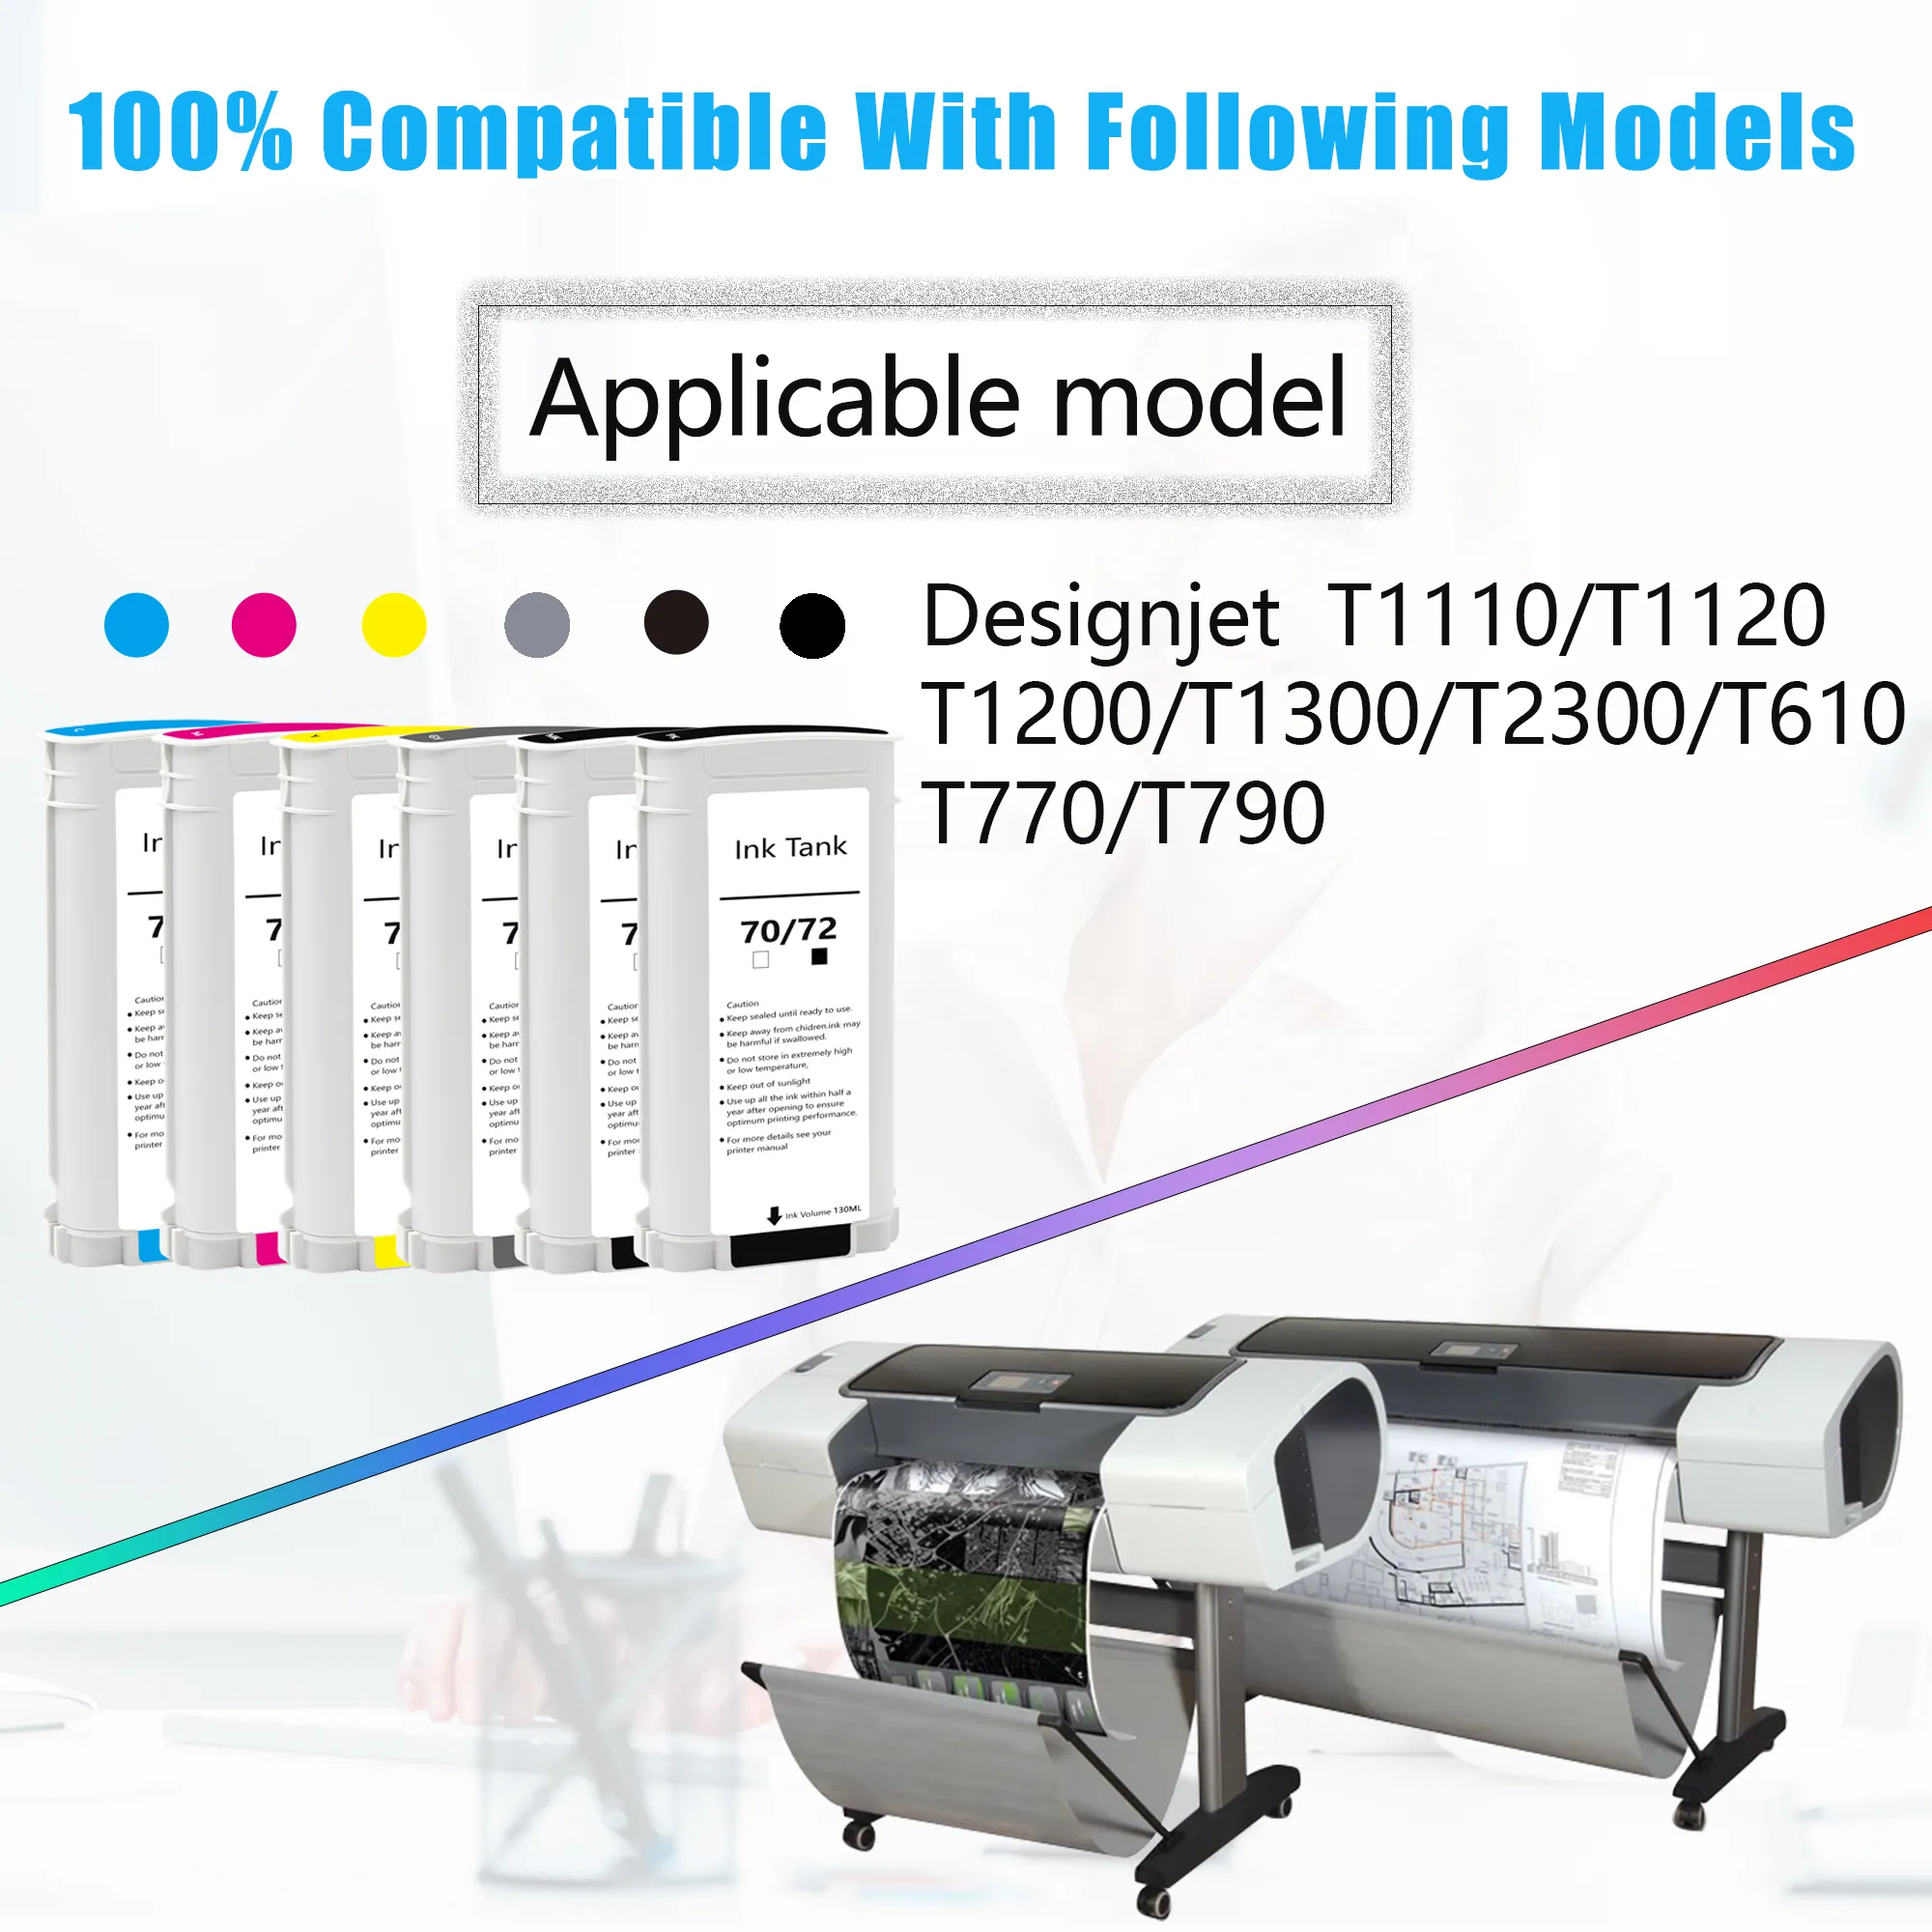 Cartucho de tinta Supercolor para impresora HP 70/72, 130 ML, Compatible con HP Designjet T1300, T790, T620, T770, T1100, T1120, T1200